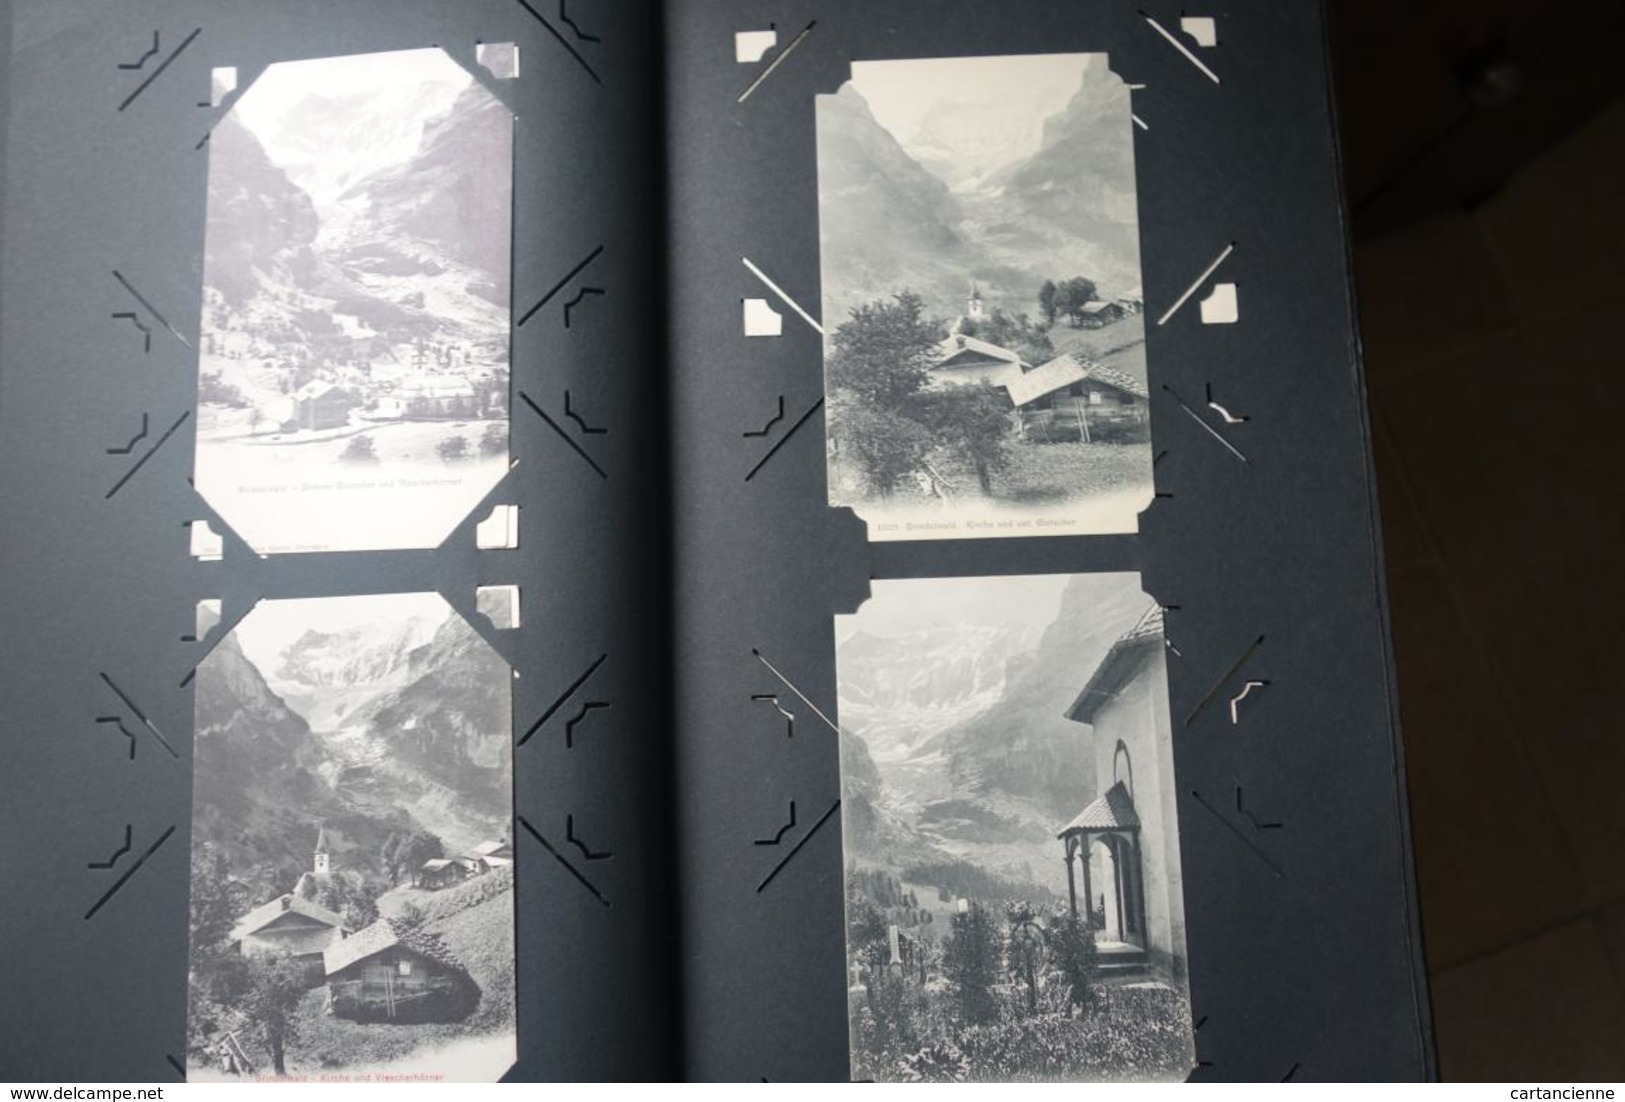 Album d'environ 250 cartes de SUISSE - 1906